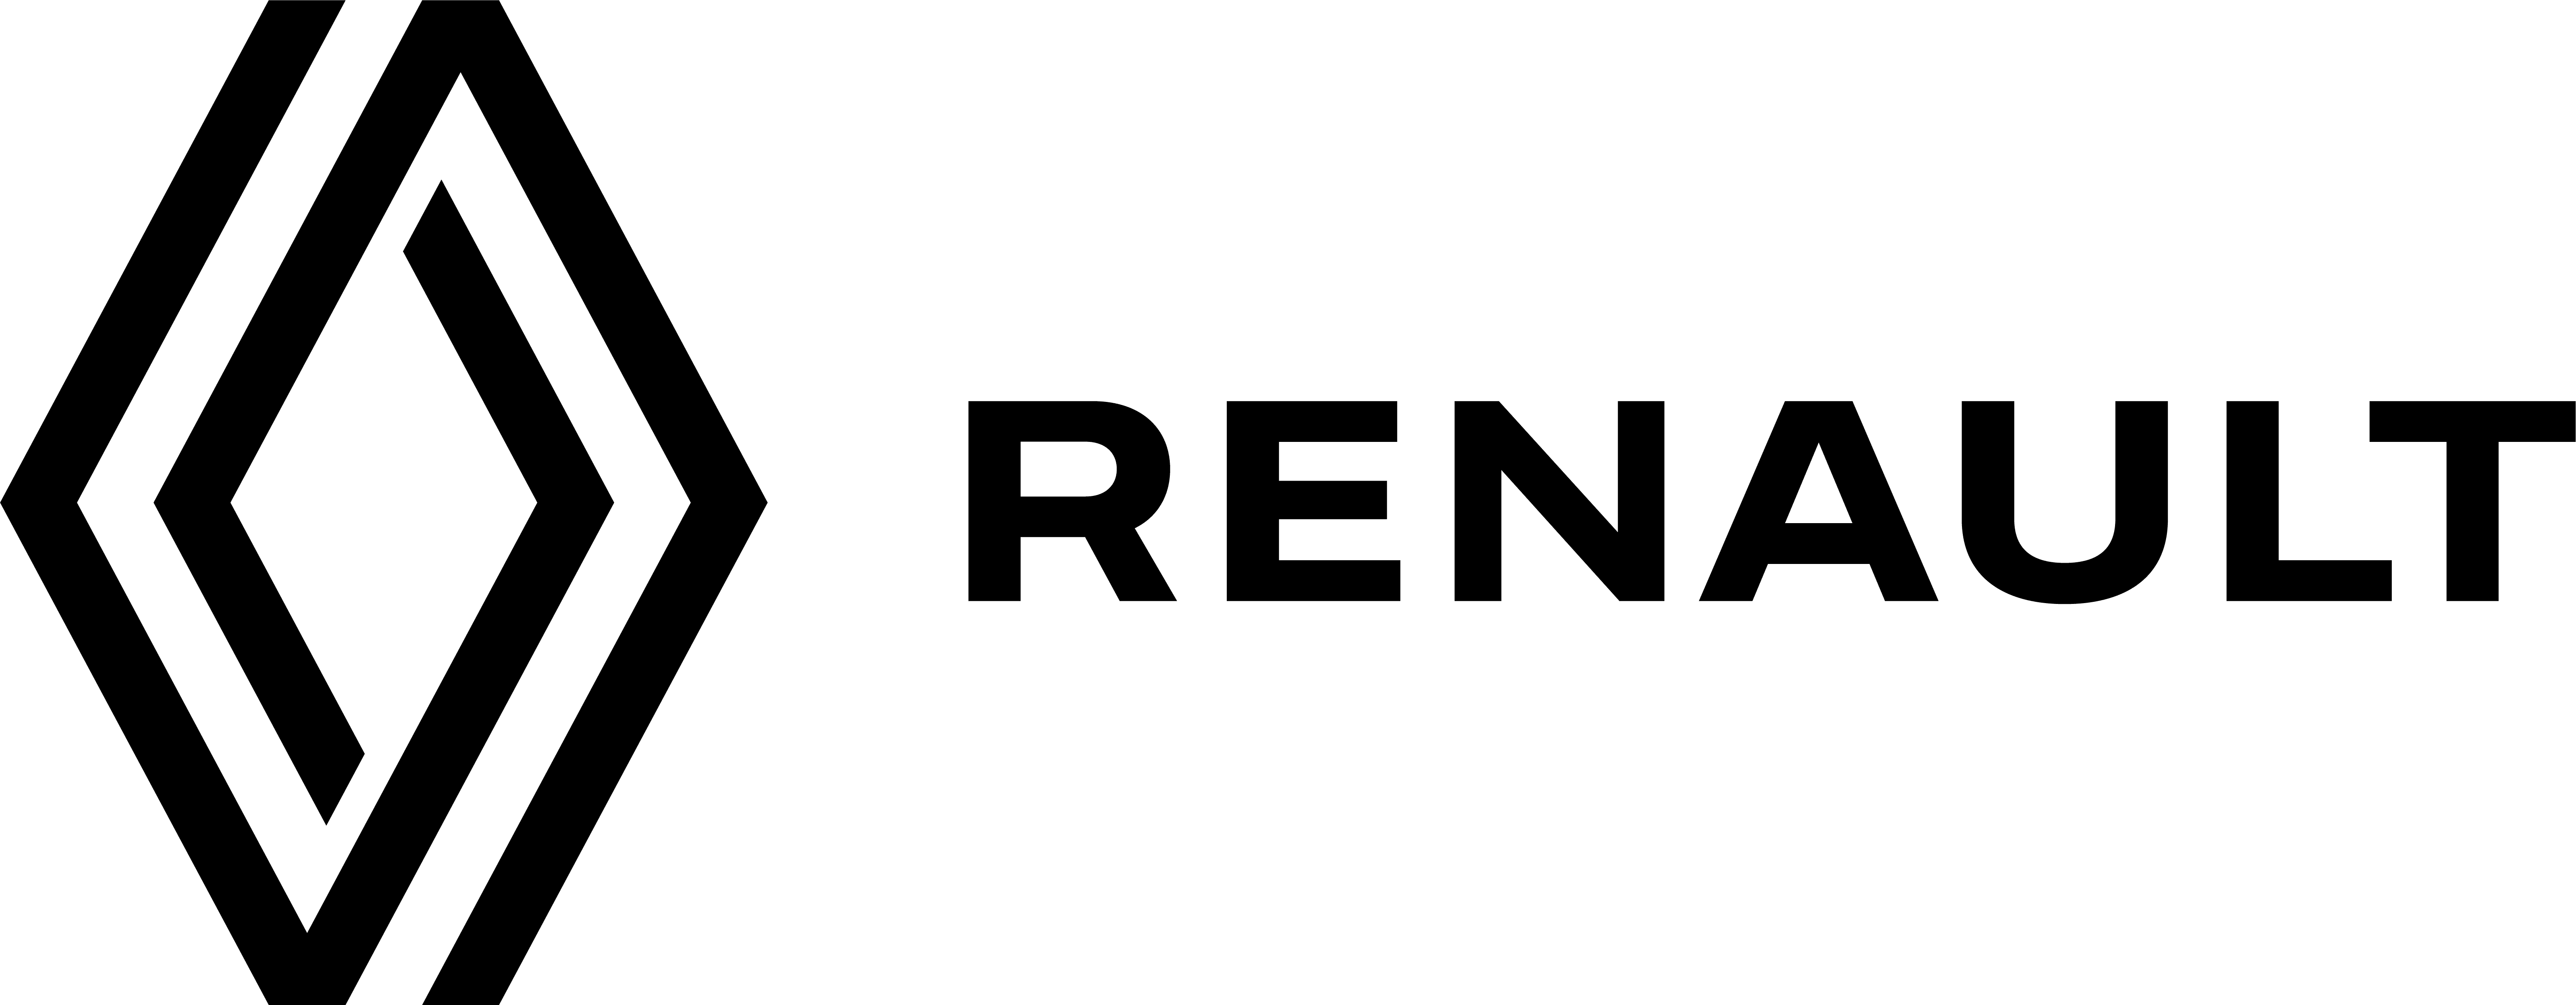 renault-logo-lp